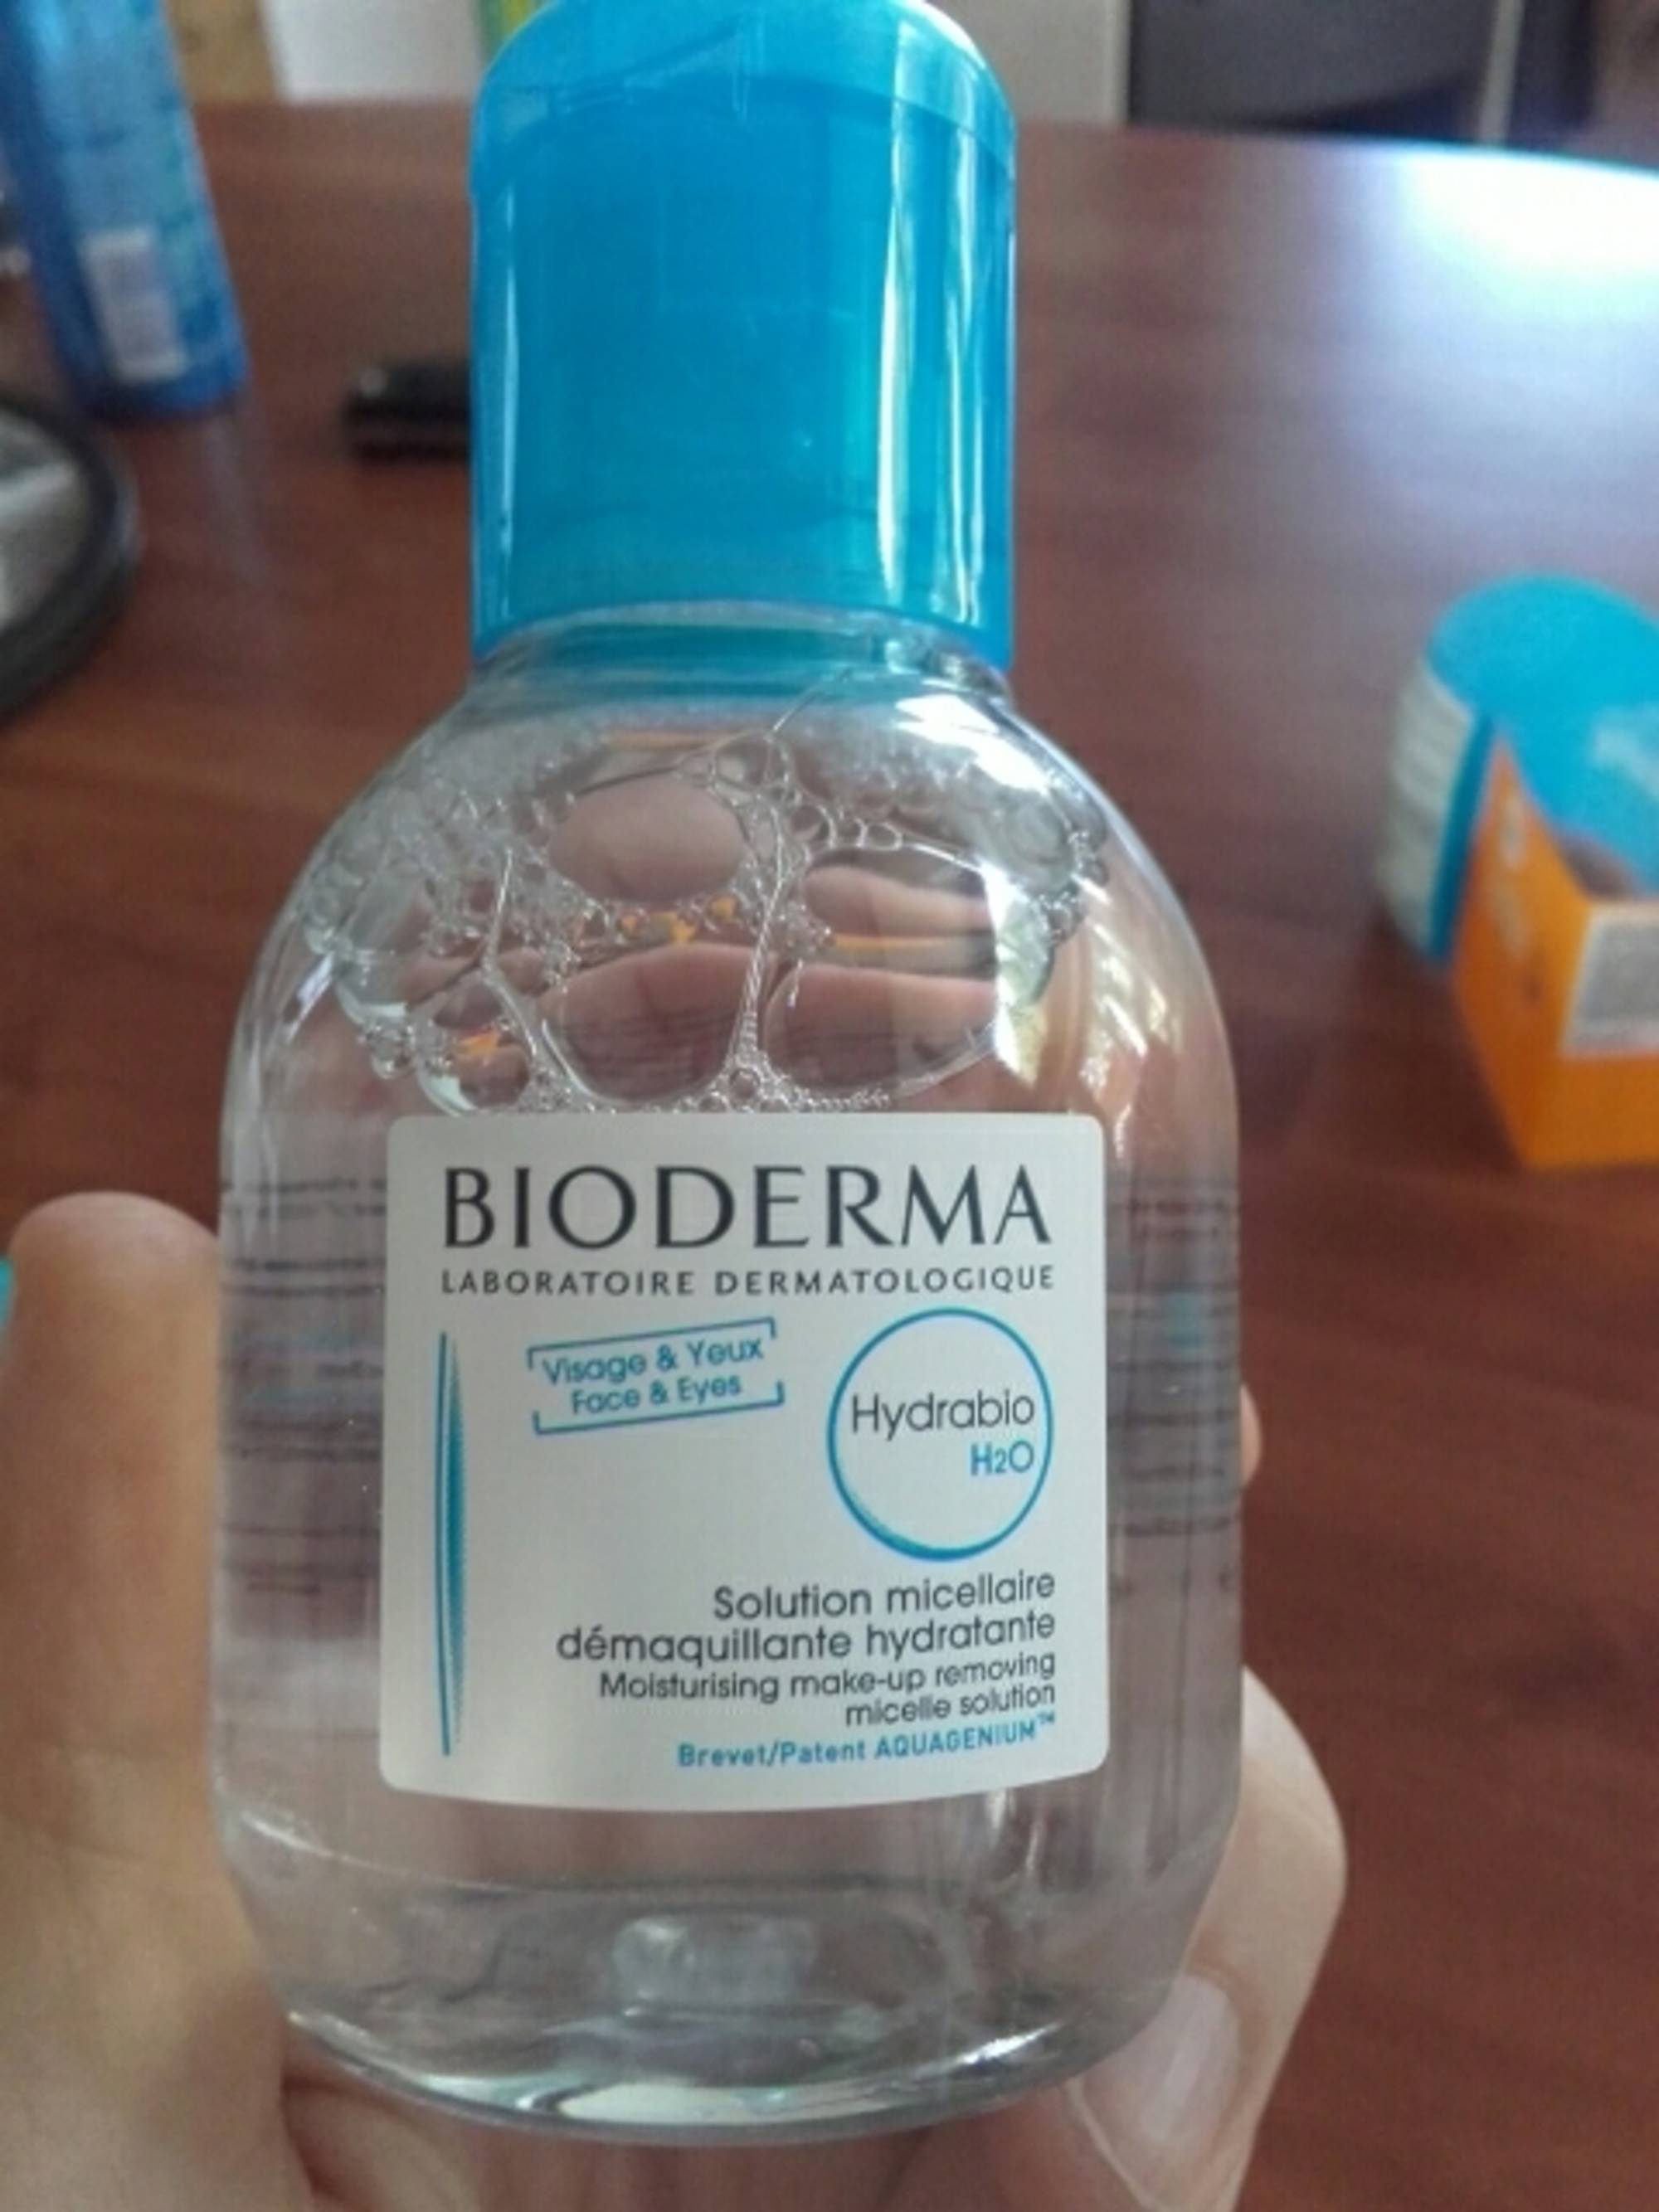 BIODERMA - Hydrabio H2O - Solution micellaire démaquillante hydratante